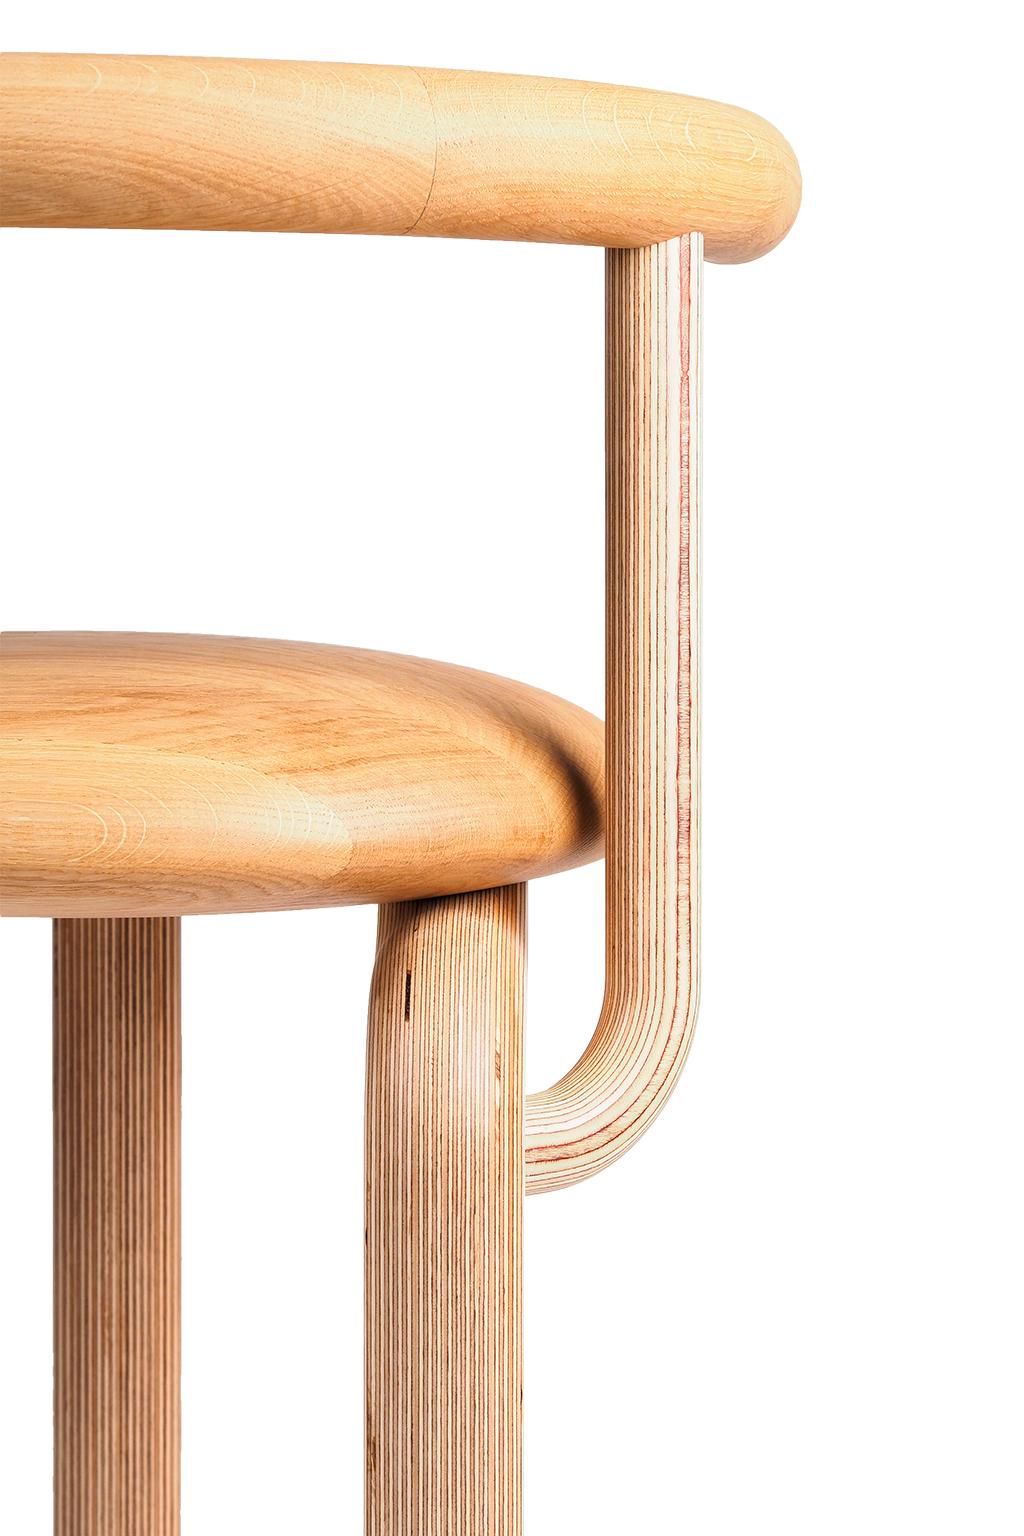 wooden round chair